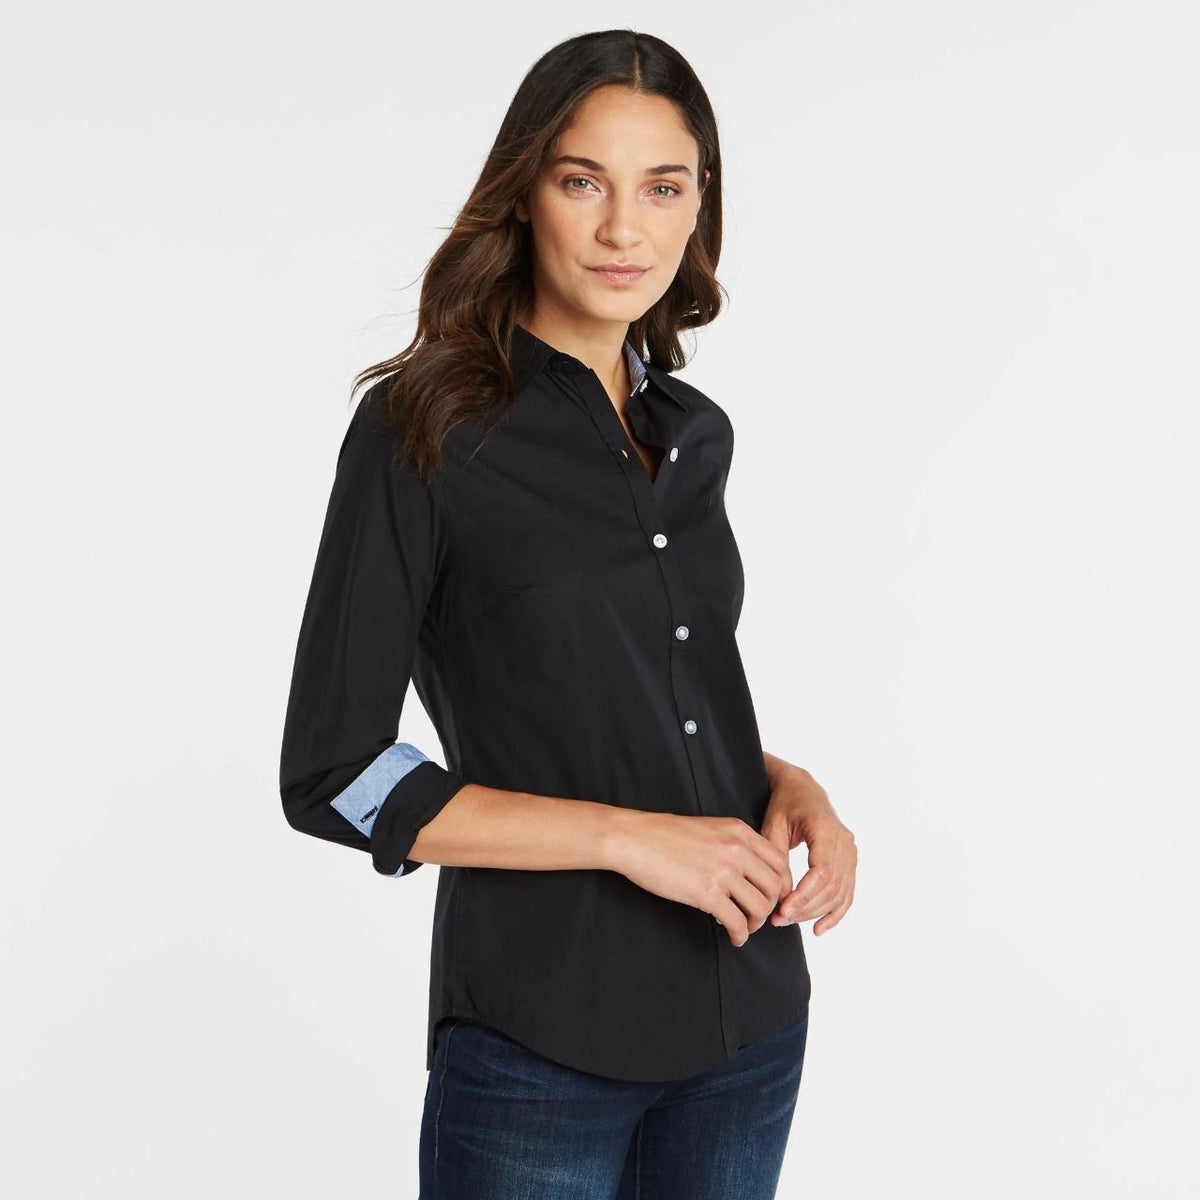 Camisa Nautica Mujer Black Xs Camisas